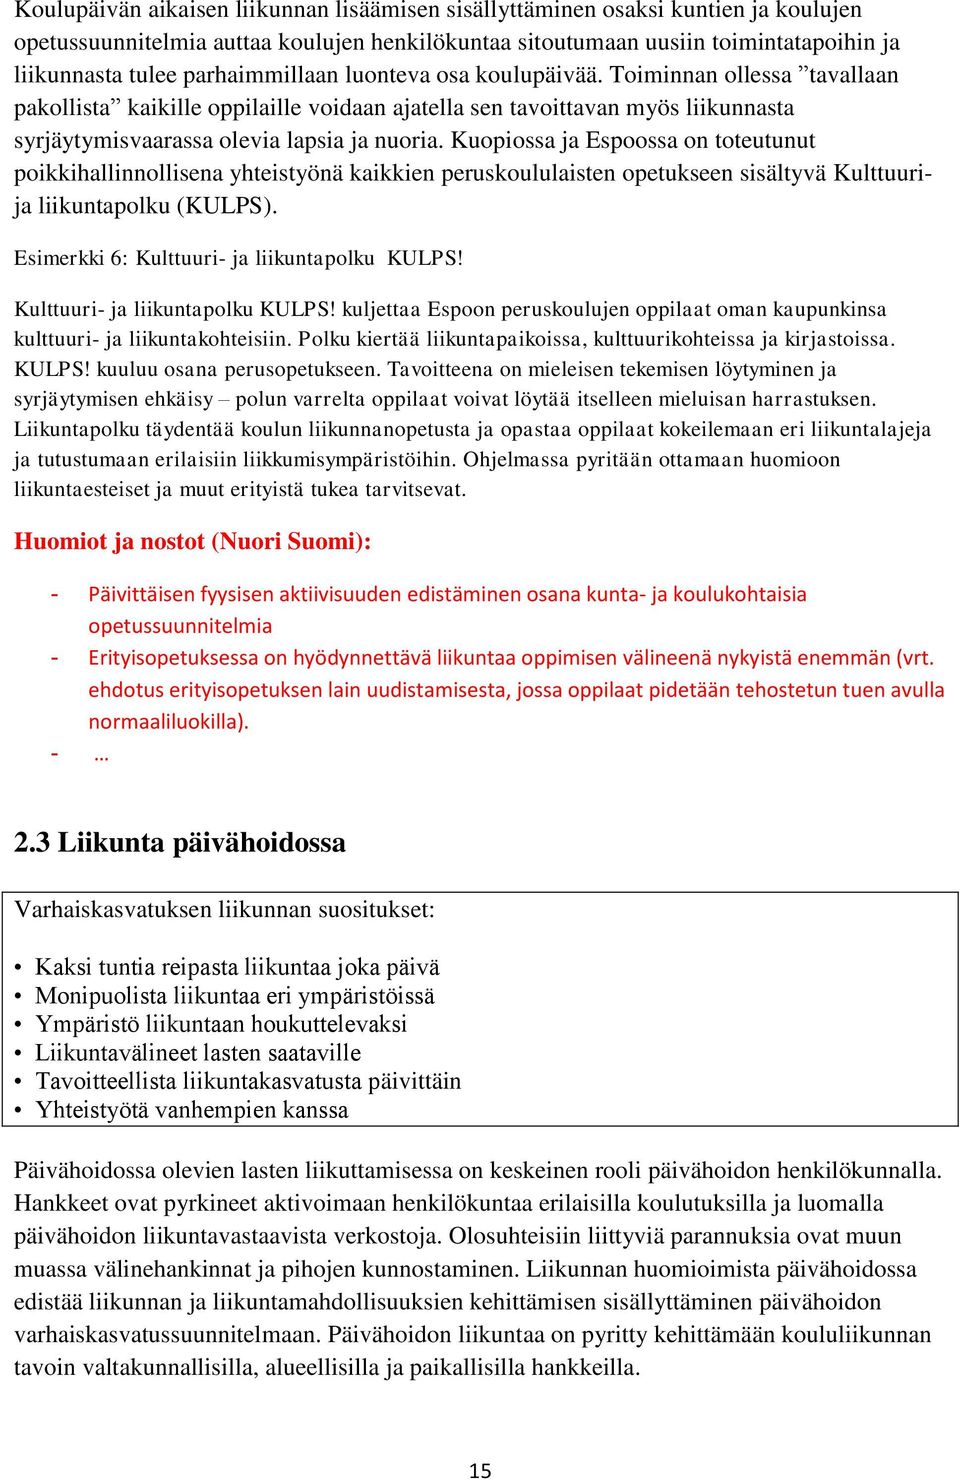 Kuopiossa ja Espoossa on toteutunut poikkihallinnollisena yhteistyönä kaikkien peruskoululaisten opetukseen sisältyvä Kulttuurija liikuntapolku (KULPS). Esimerkki 6: Kulttuuri- ja liikuntapolku KULPS!